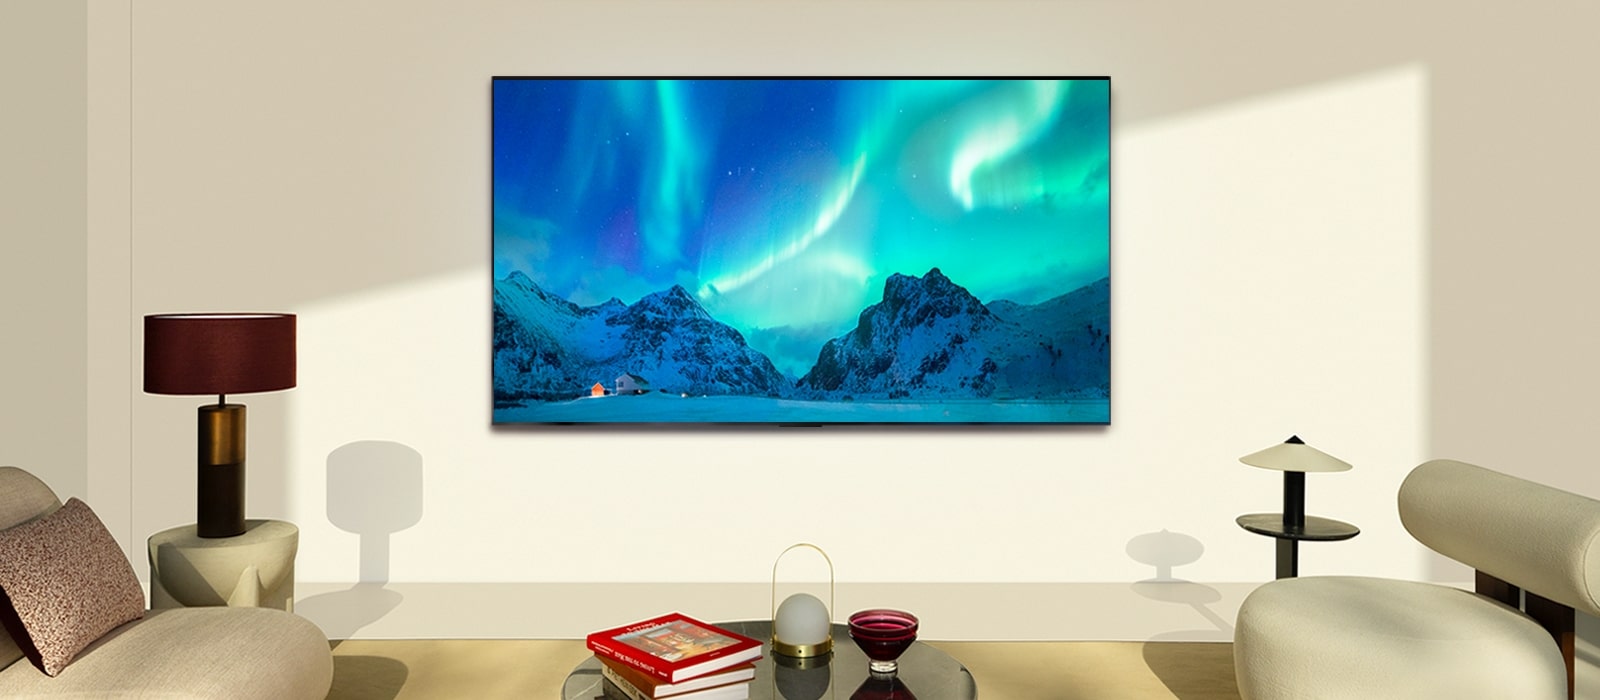 Un LG TV OLED dans un salon moderne pendant la journée. L’écran affiche une image de l’aurore boréale avec une luminosité idéale.